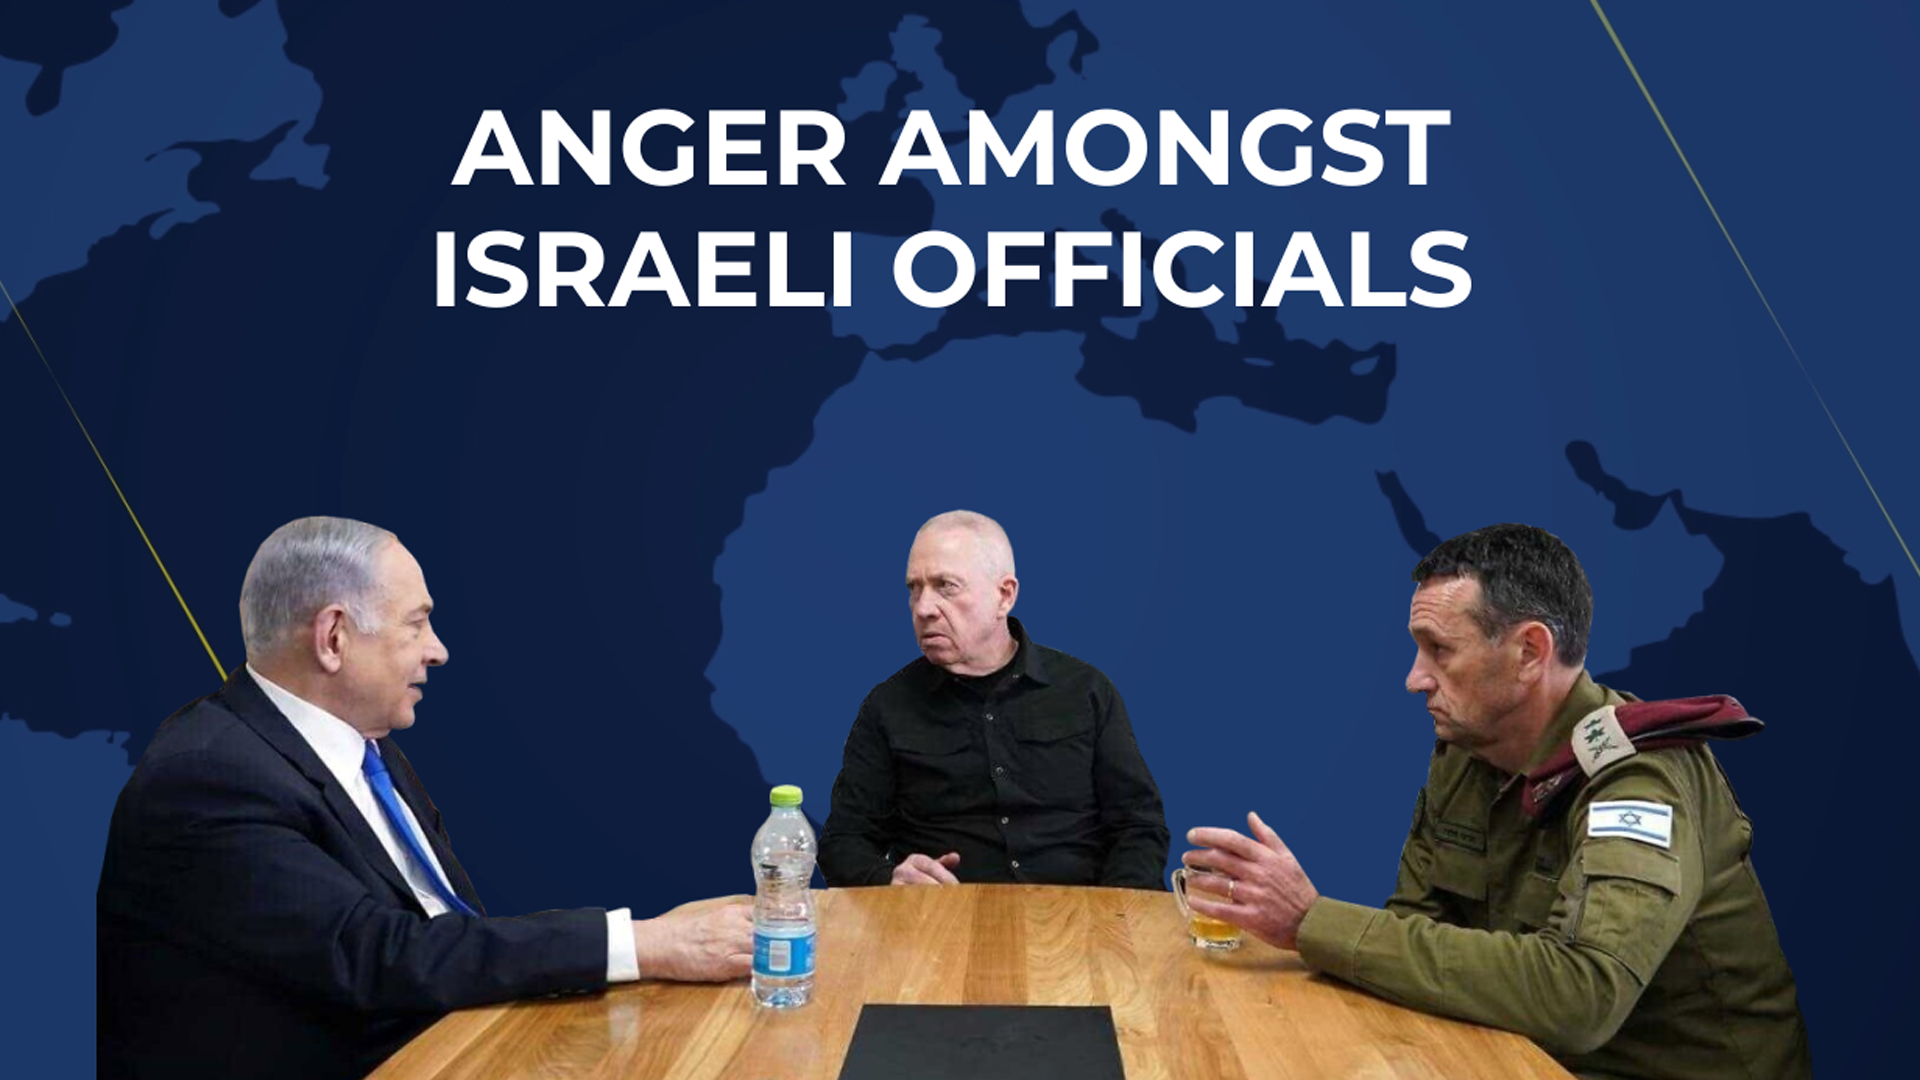 Anger amongst Israeli officials